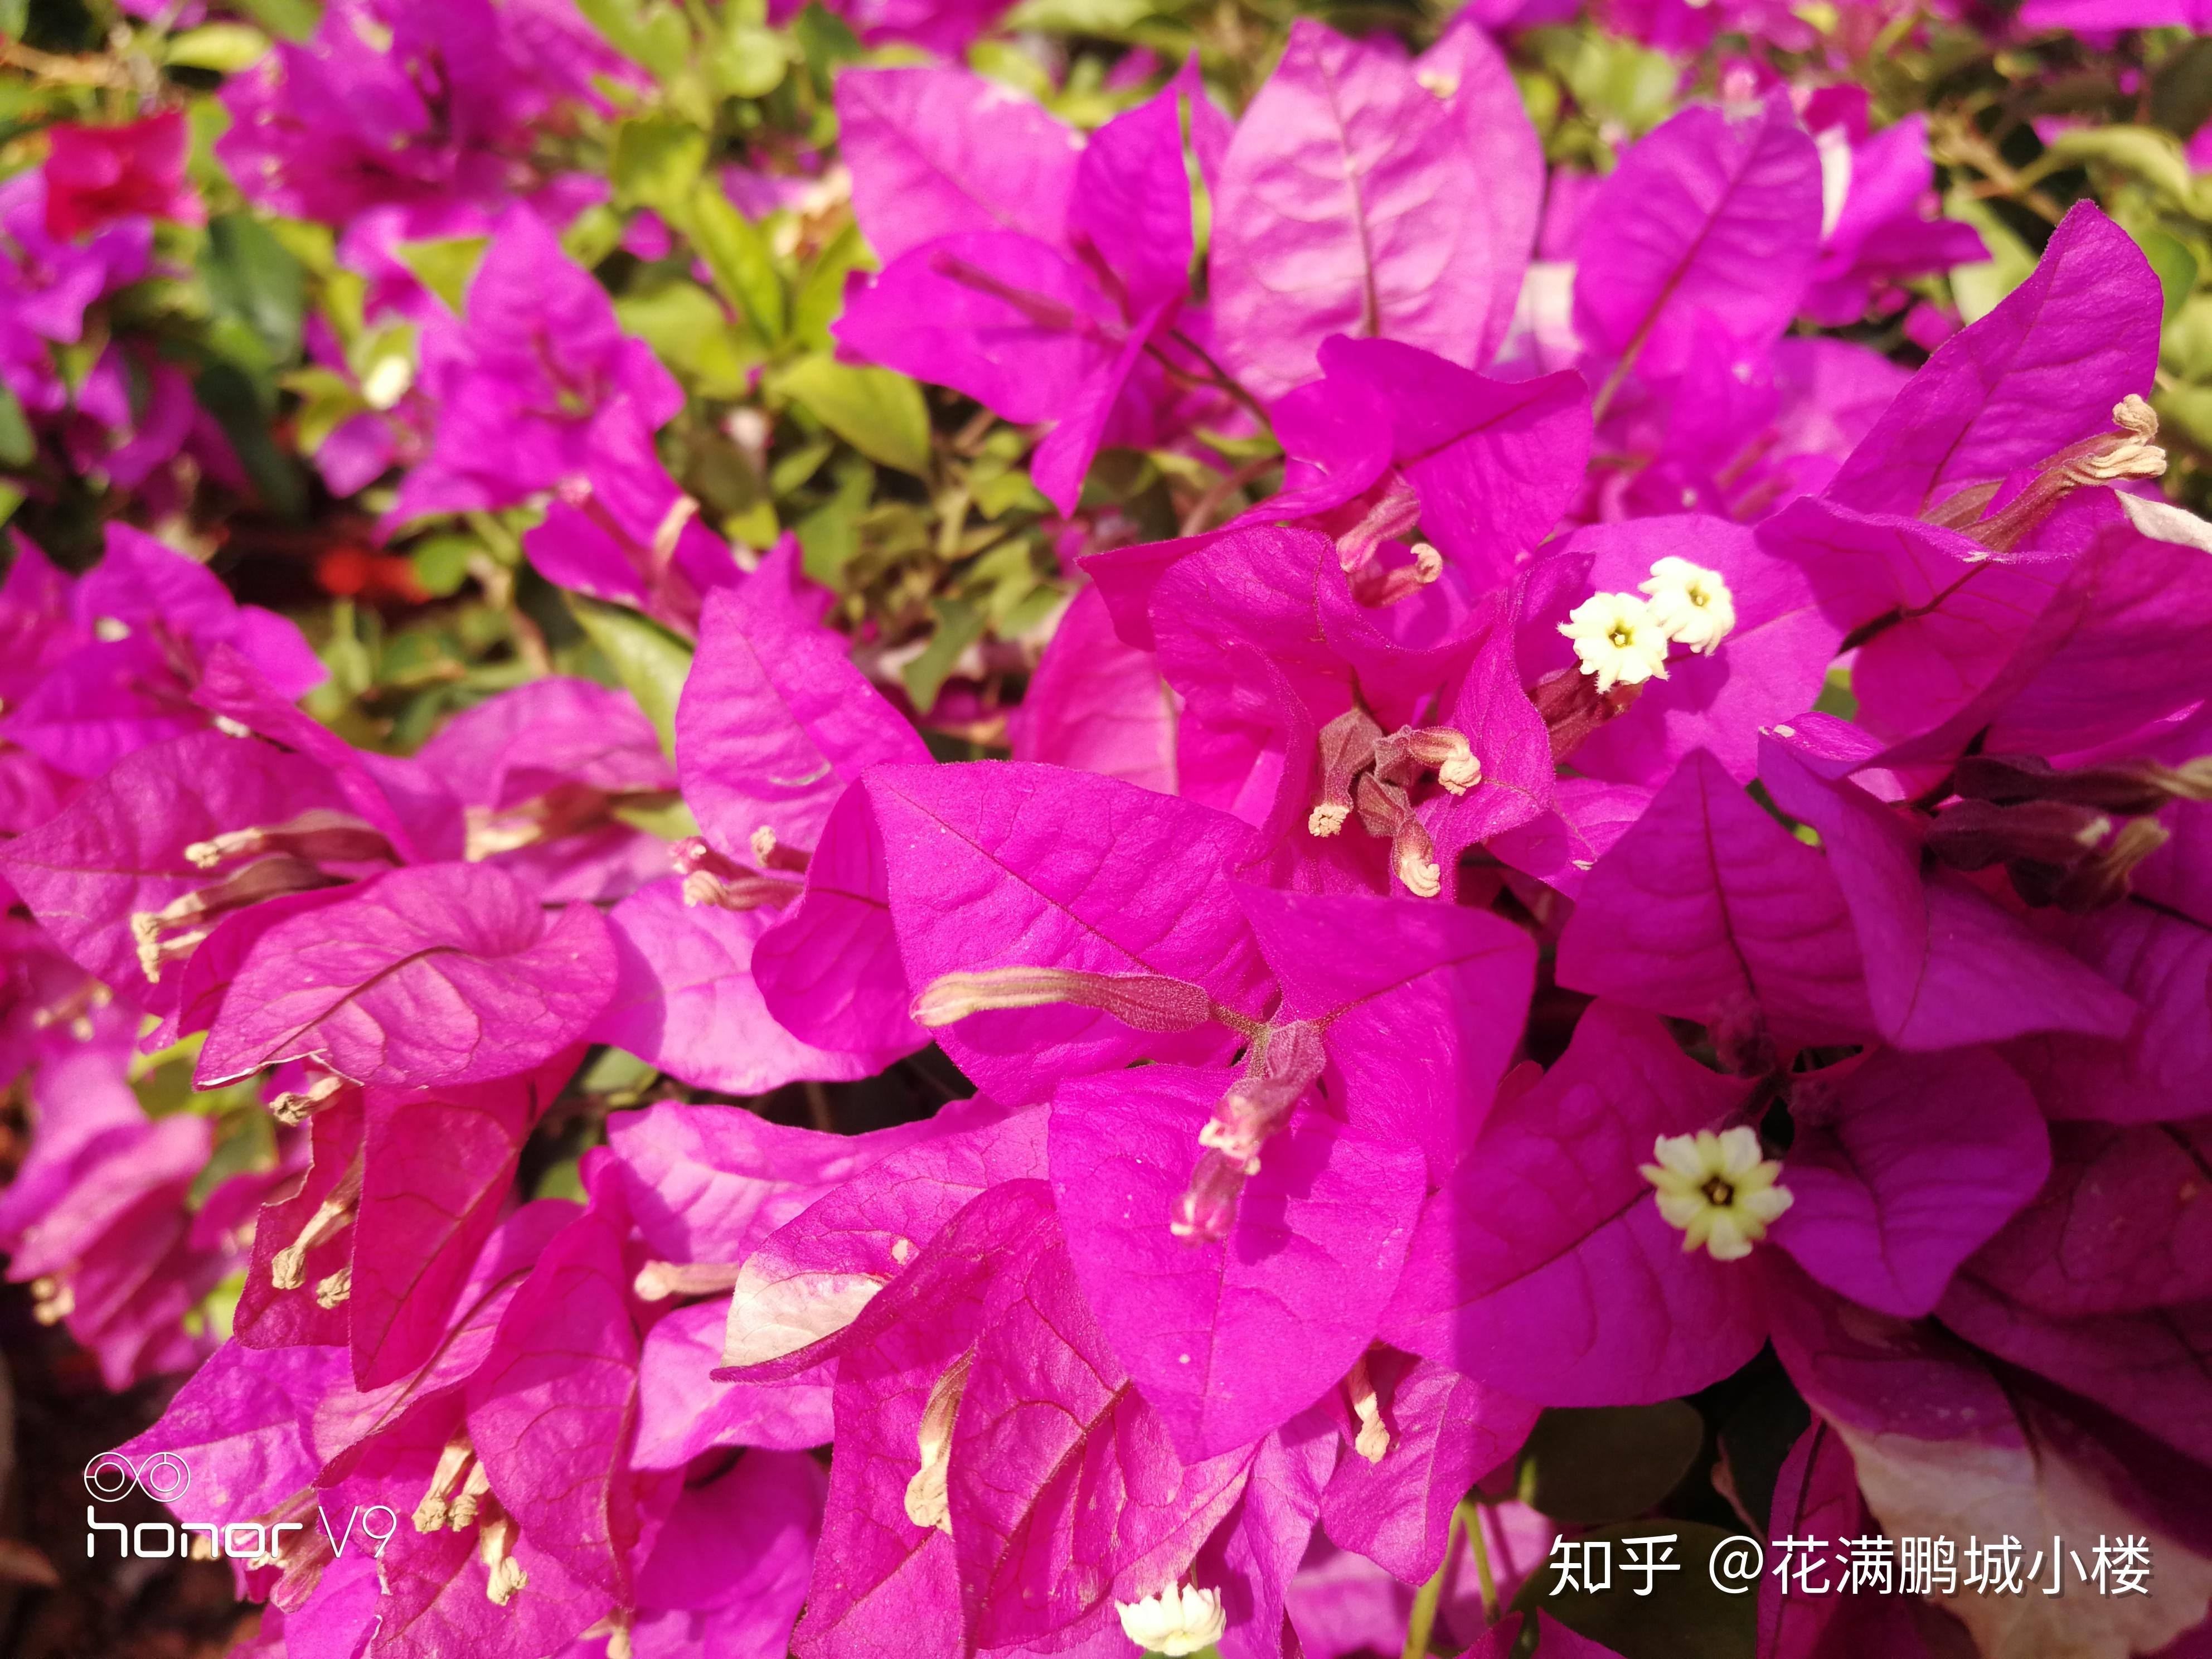 深圳莲花山公园勒杜鹃展,艳阳下耀眼的三角梅们